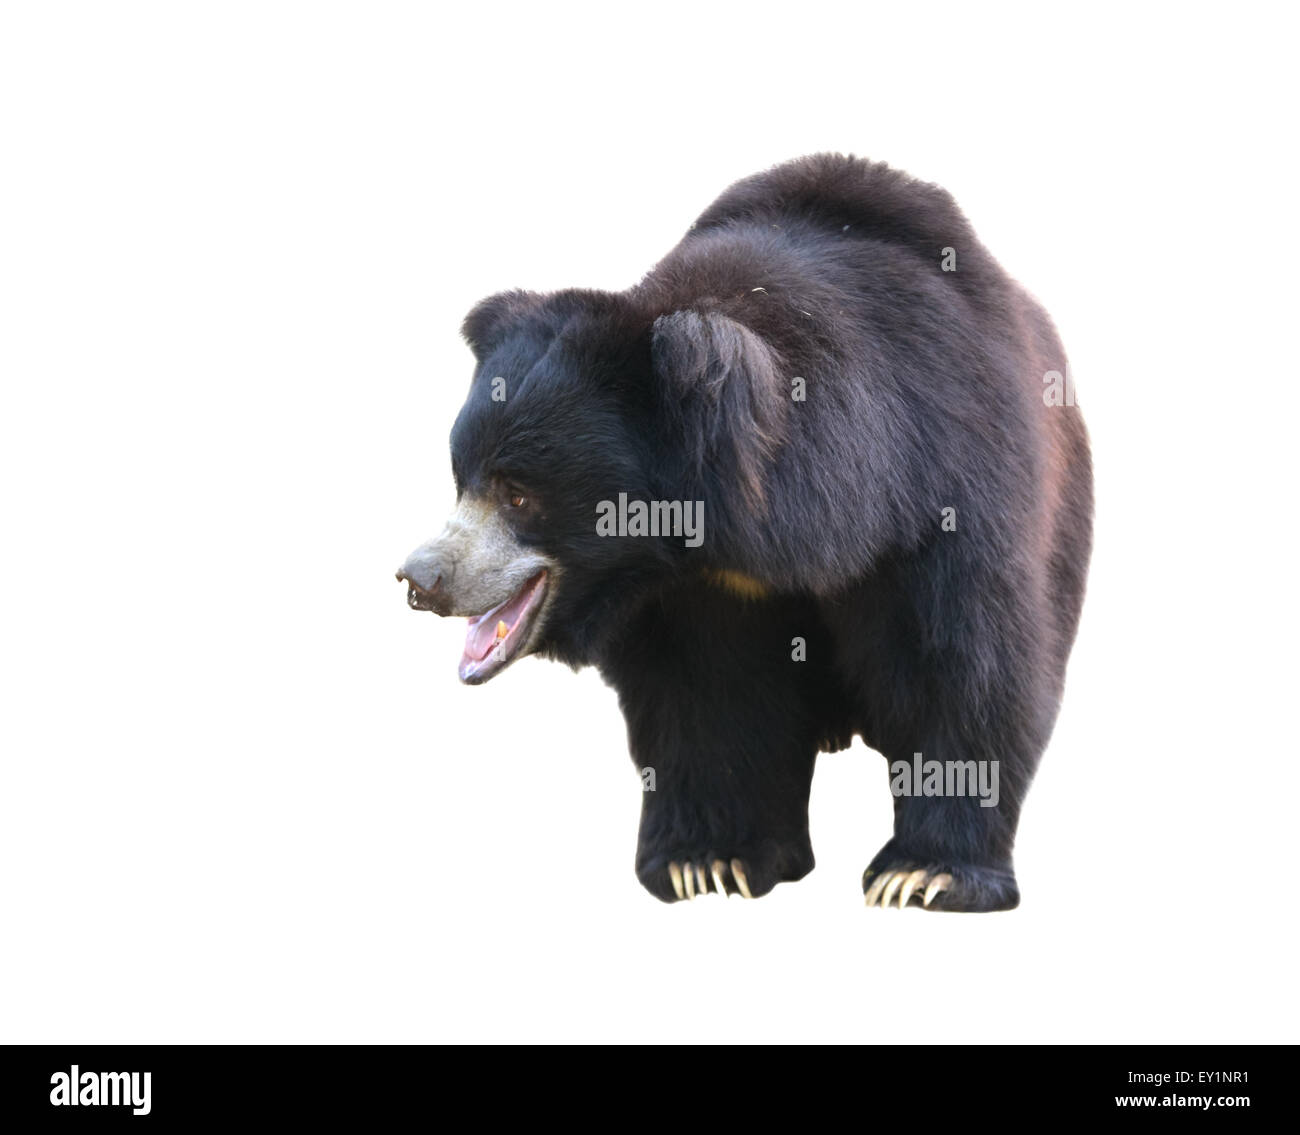 sloth bear or Melursus ursinus isolated on white background Stock Photo